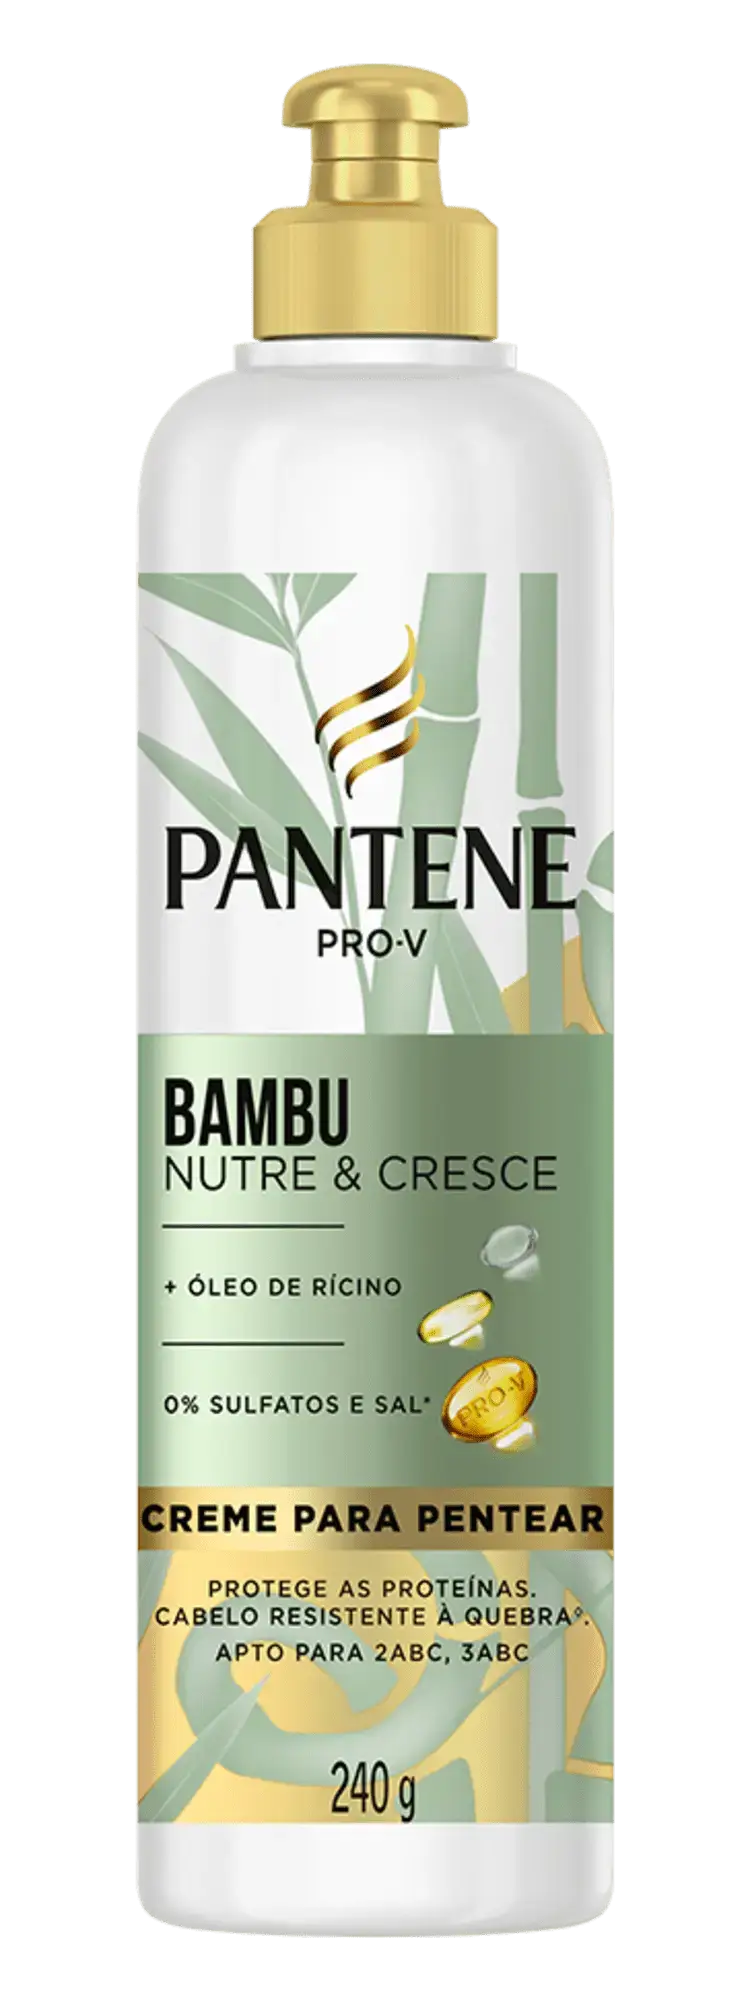 Creme para pentear Pantene bambu nutre e cresce com óleo de rícino para o cabelo